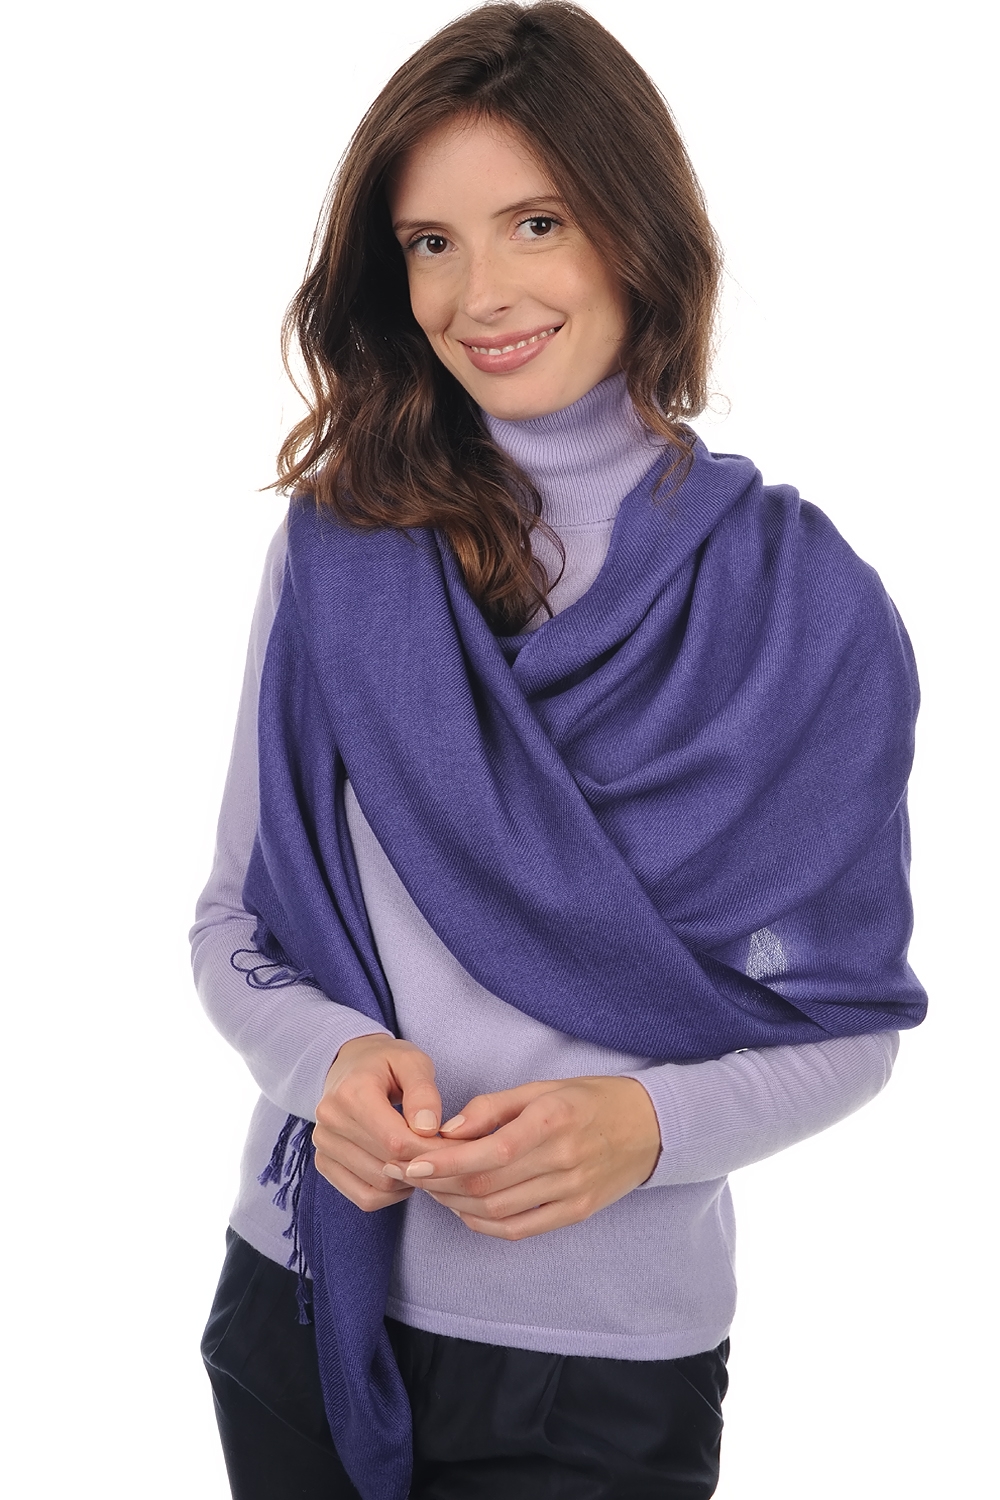 Cashmere ladies shawls diamant blue violette 201 cm x 71 cm